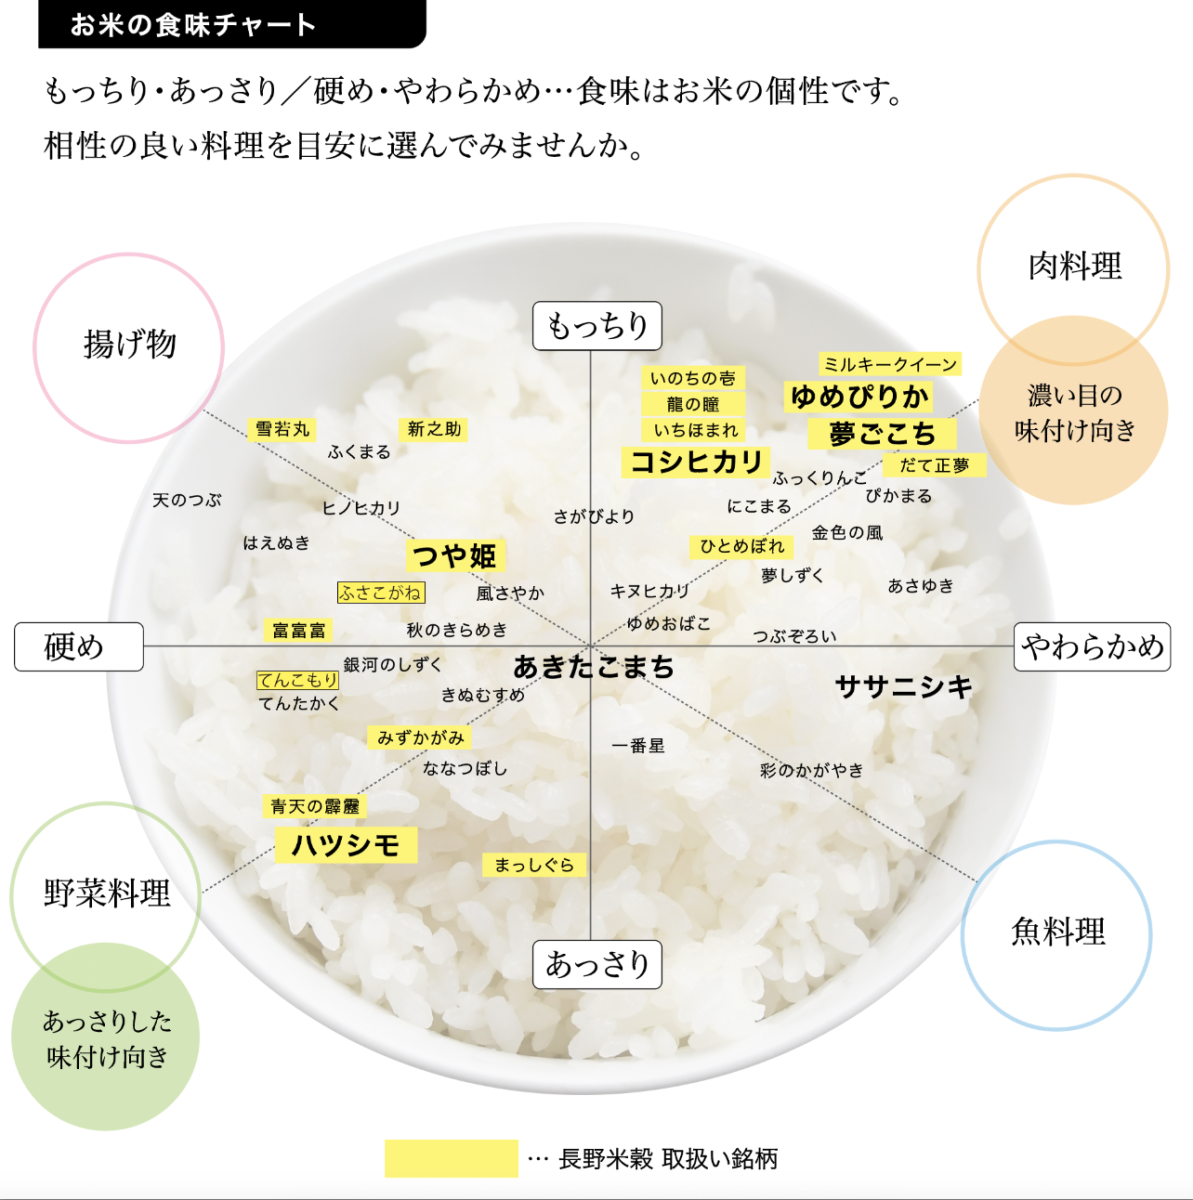 お米の食味チャート | 株式会社山み長野米穀